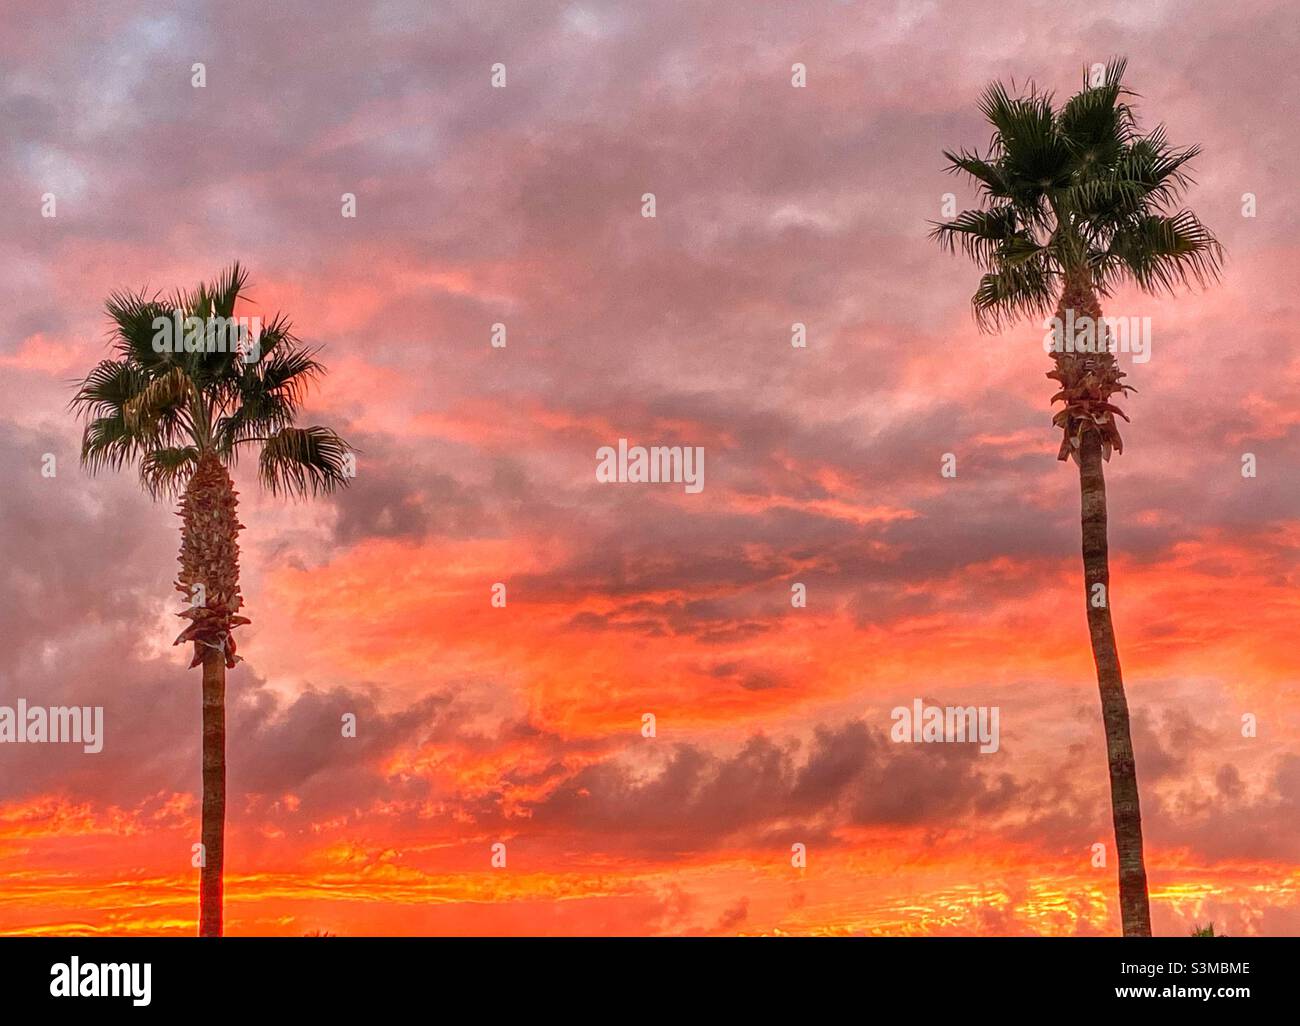 Puesta de sol en Arizona, con palmeras y hermosos colores cálidos. Foto de stock